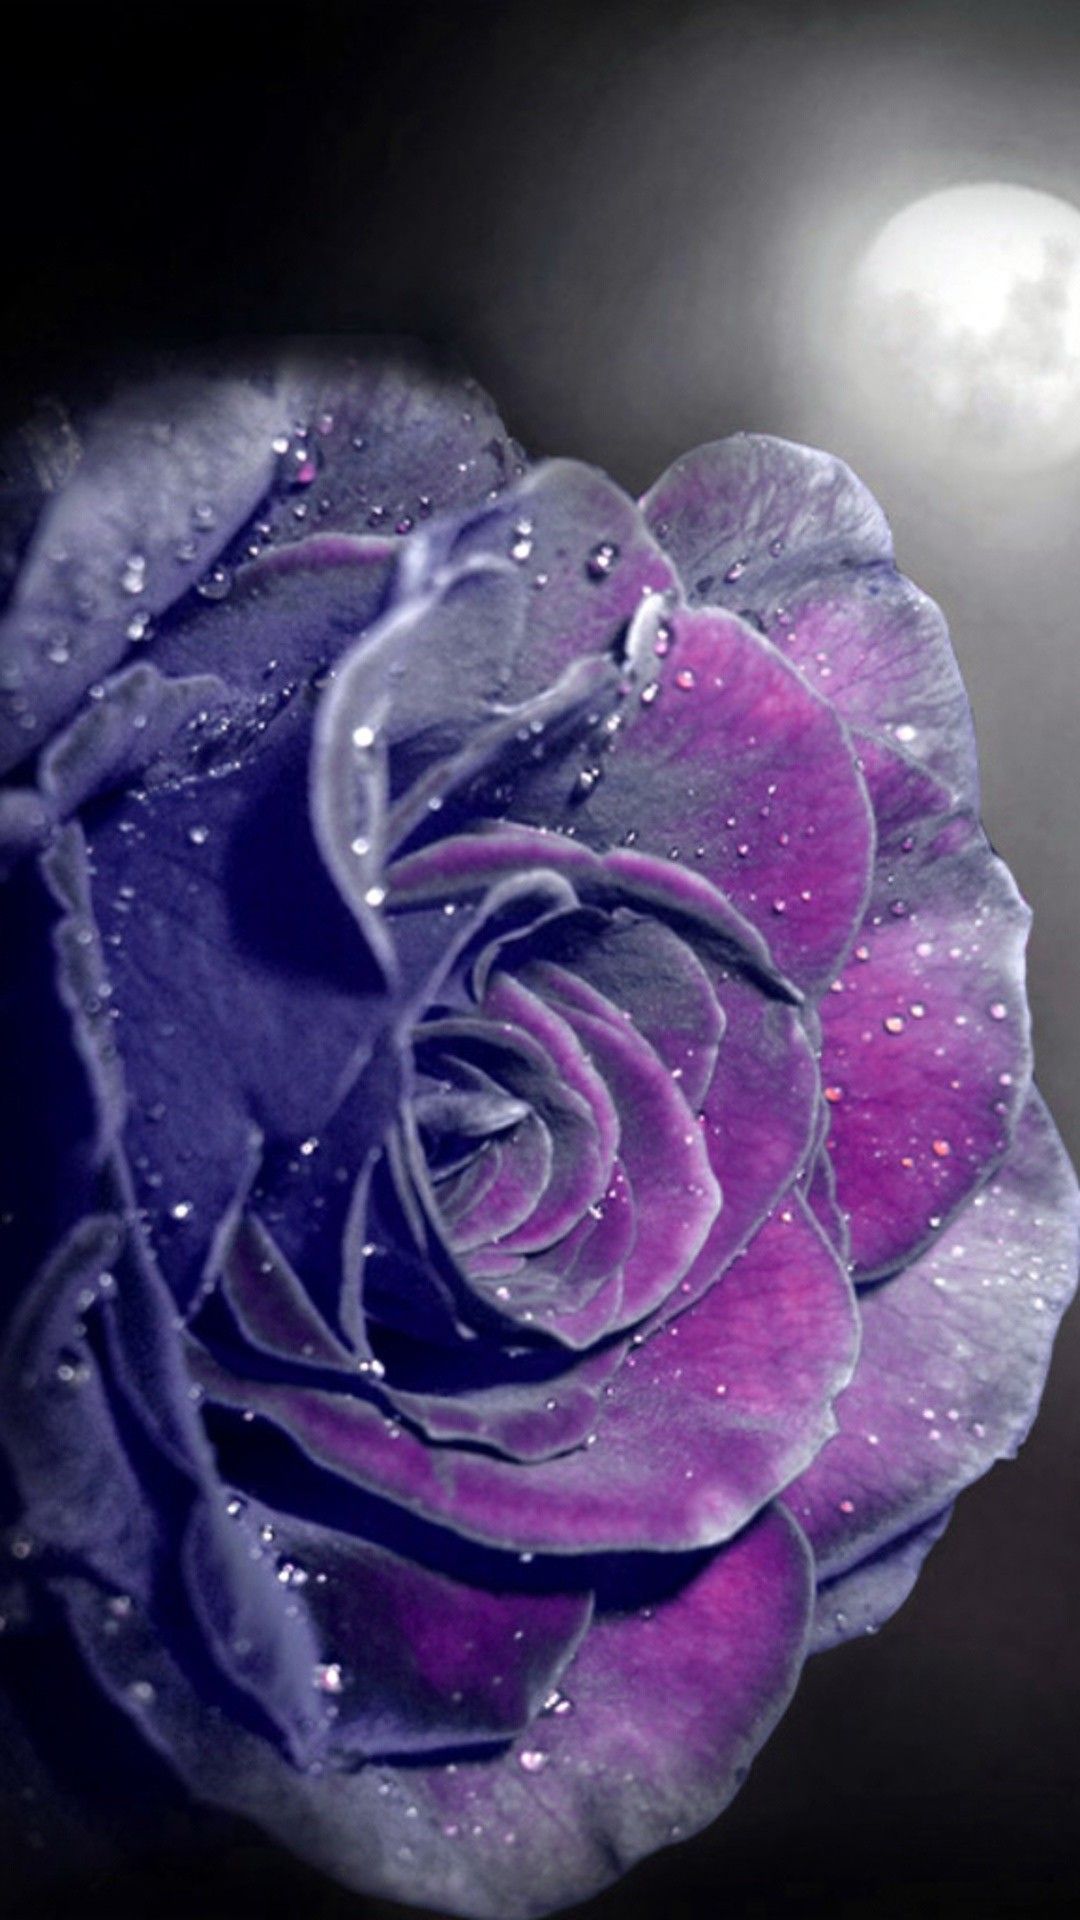 28+] Purple Rose iPhone Wallpapers - WallpaperSafari